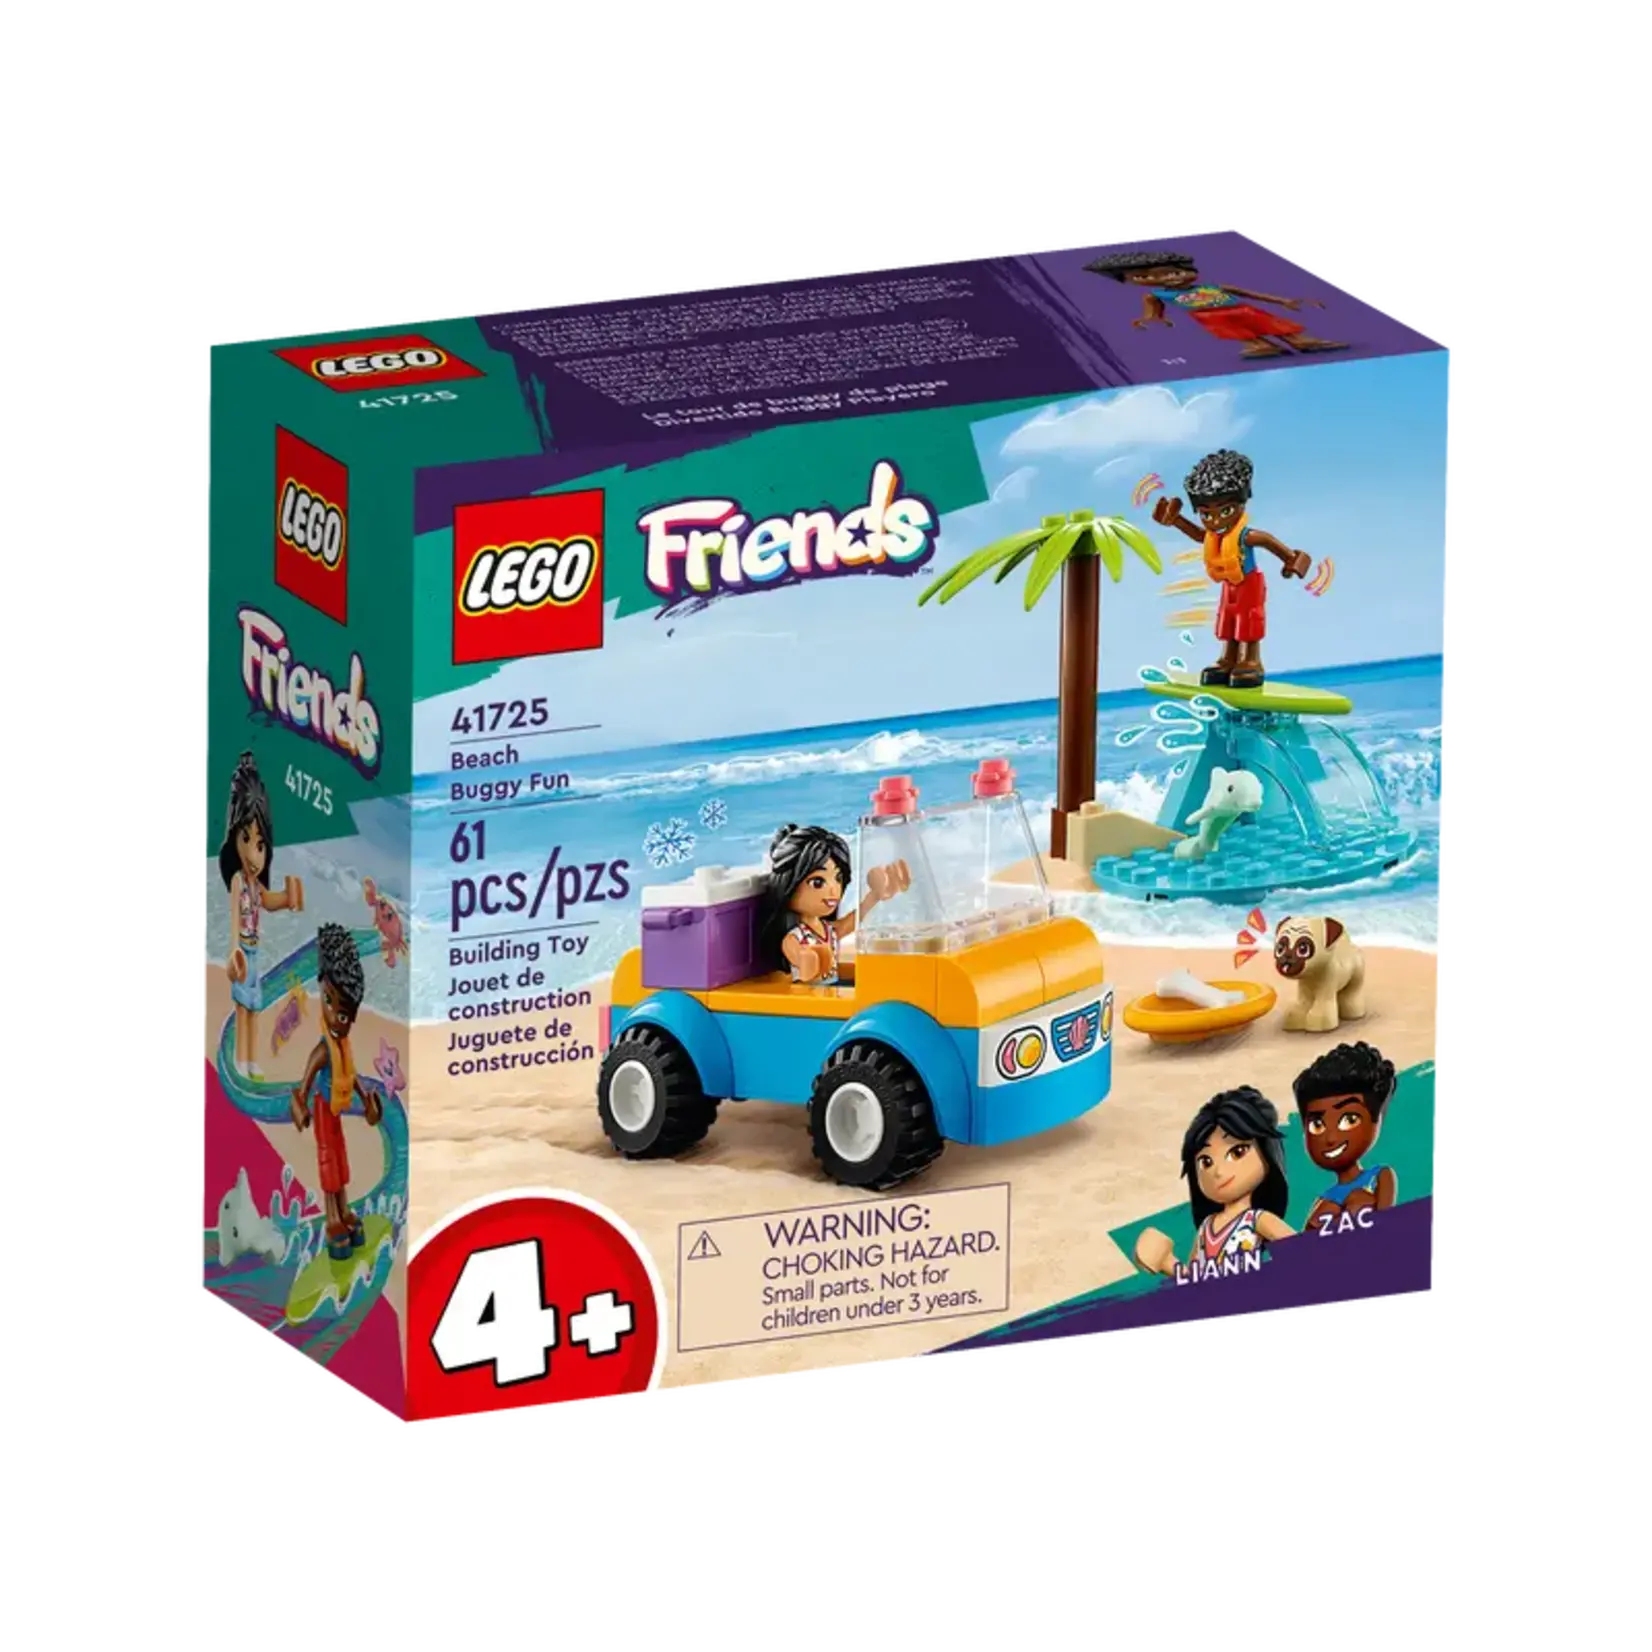 LEGO Lego Friends, Beach Buggy Fun